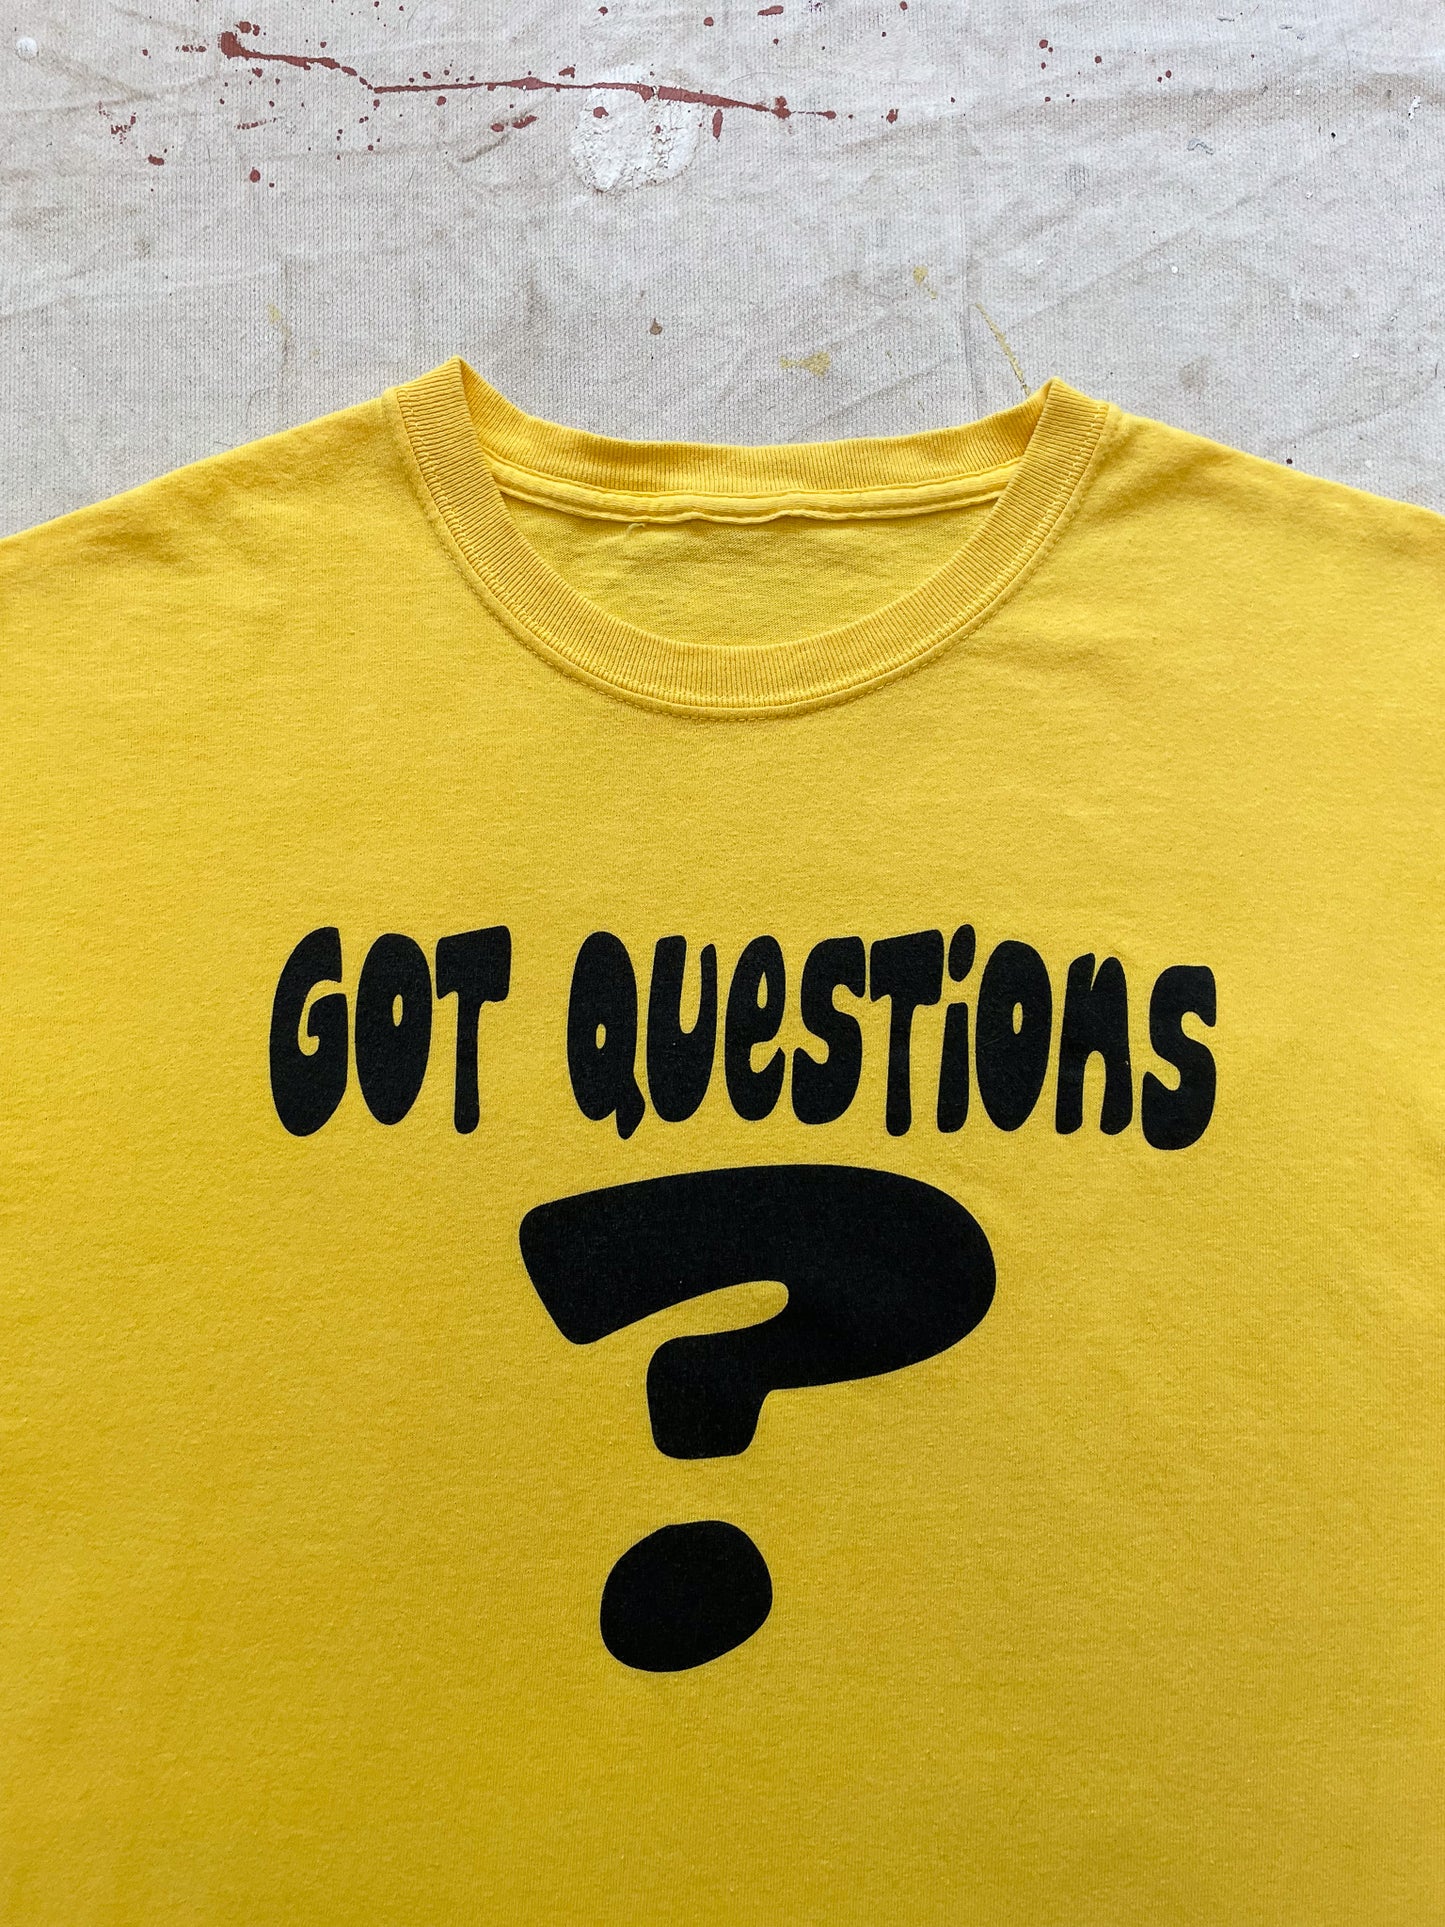 Got Questions? T-Shirt—[L]